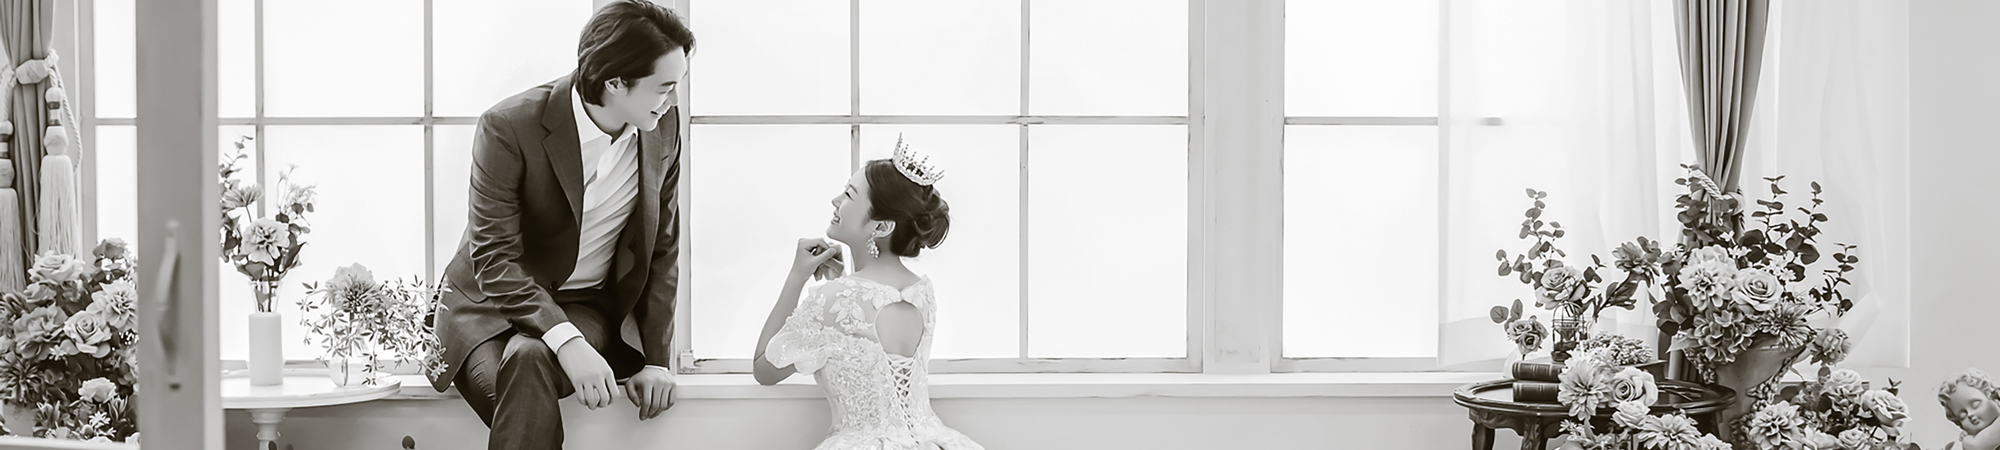 
                  フォトウェディング専門のブライダルフォトスタジオLUXE MATSUYAMA　– リュクス松山の新郎新婦の洋装とタイルと白窓の明るい部屋のイメージカット	  